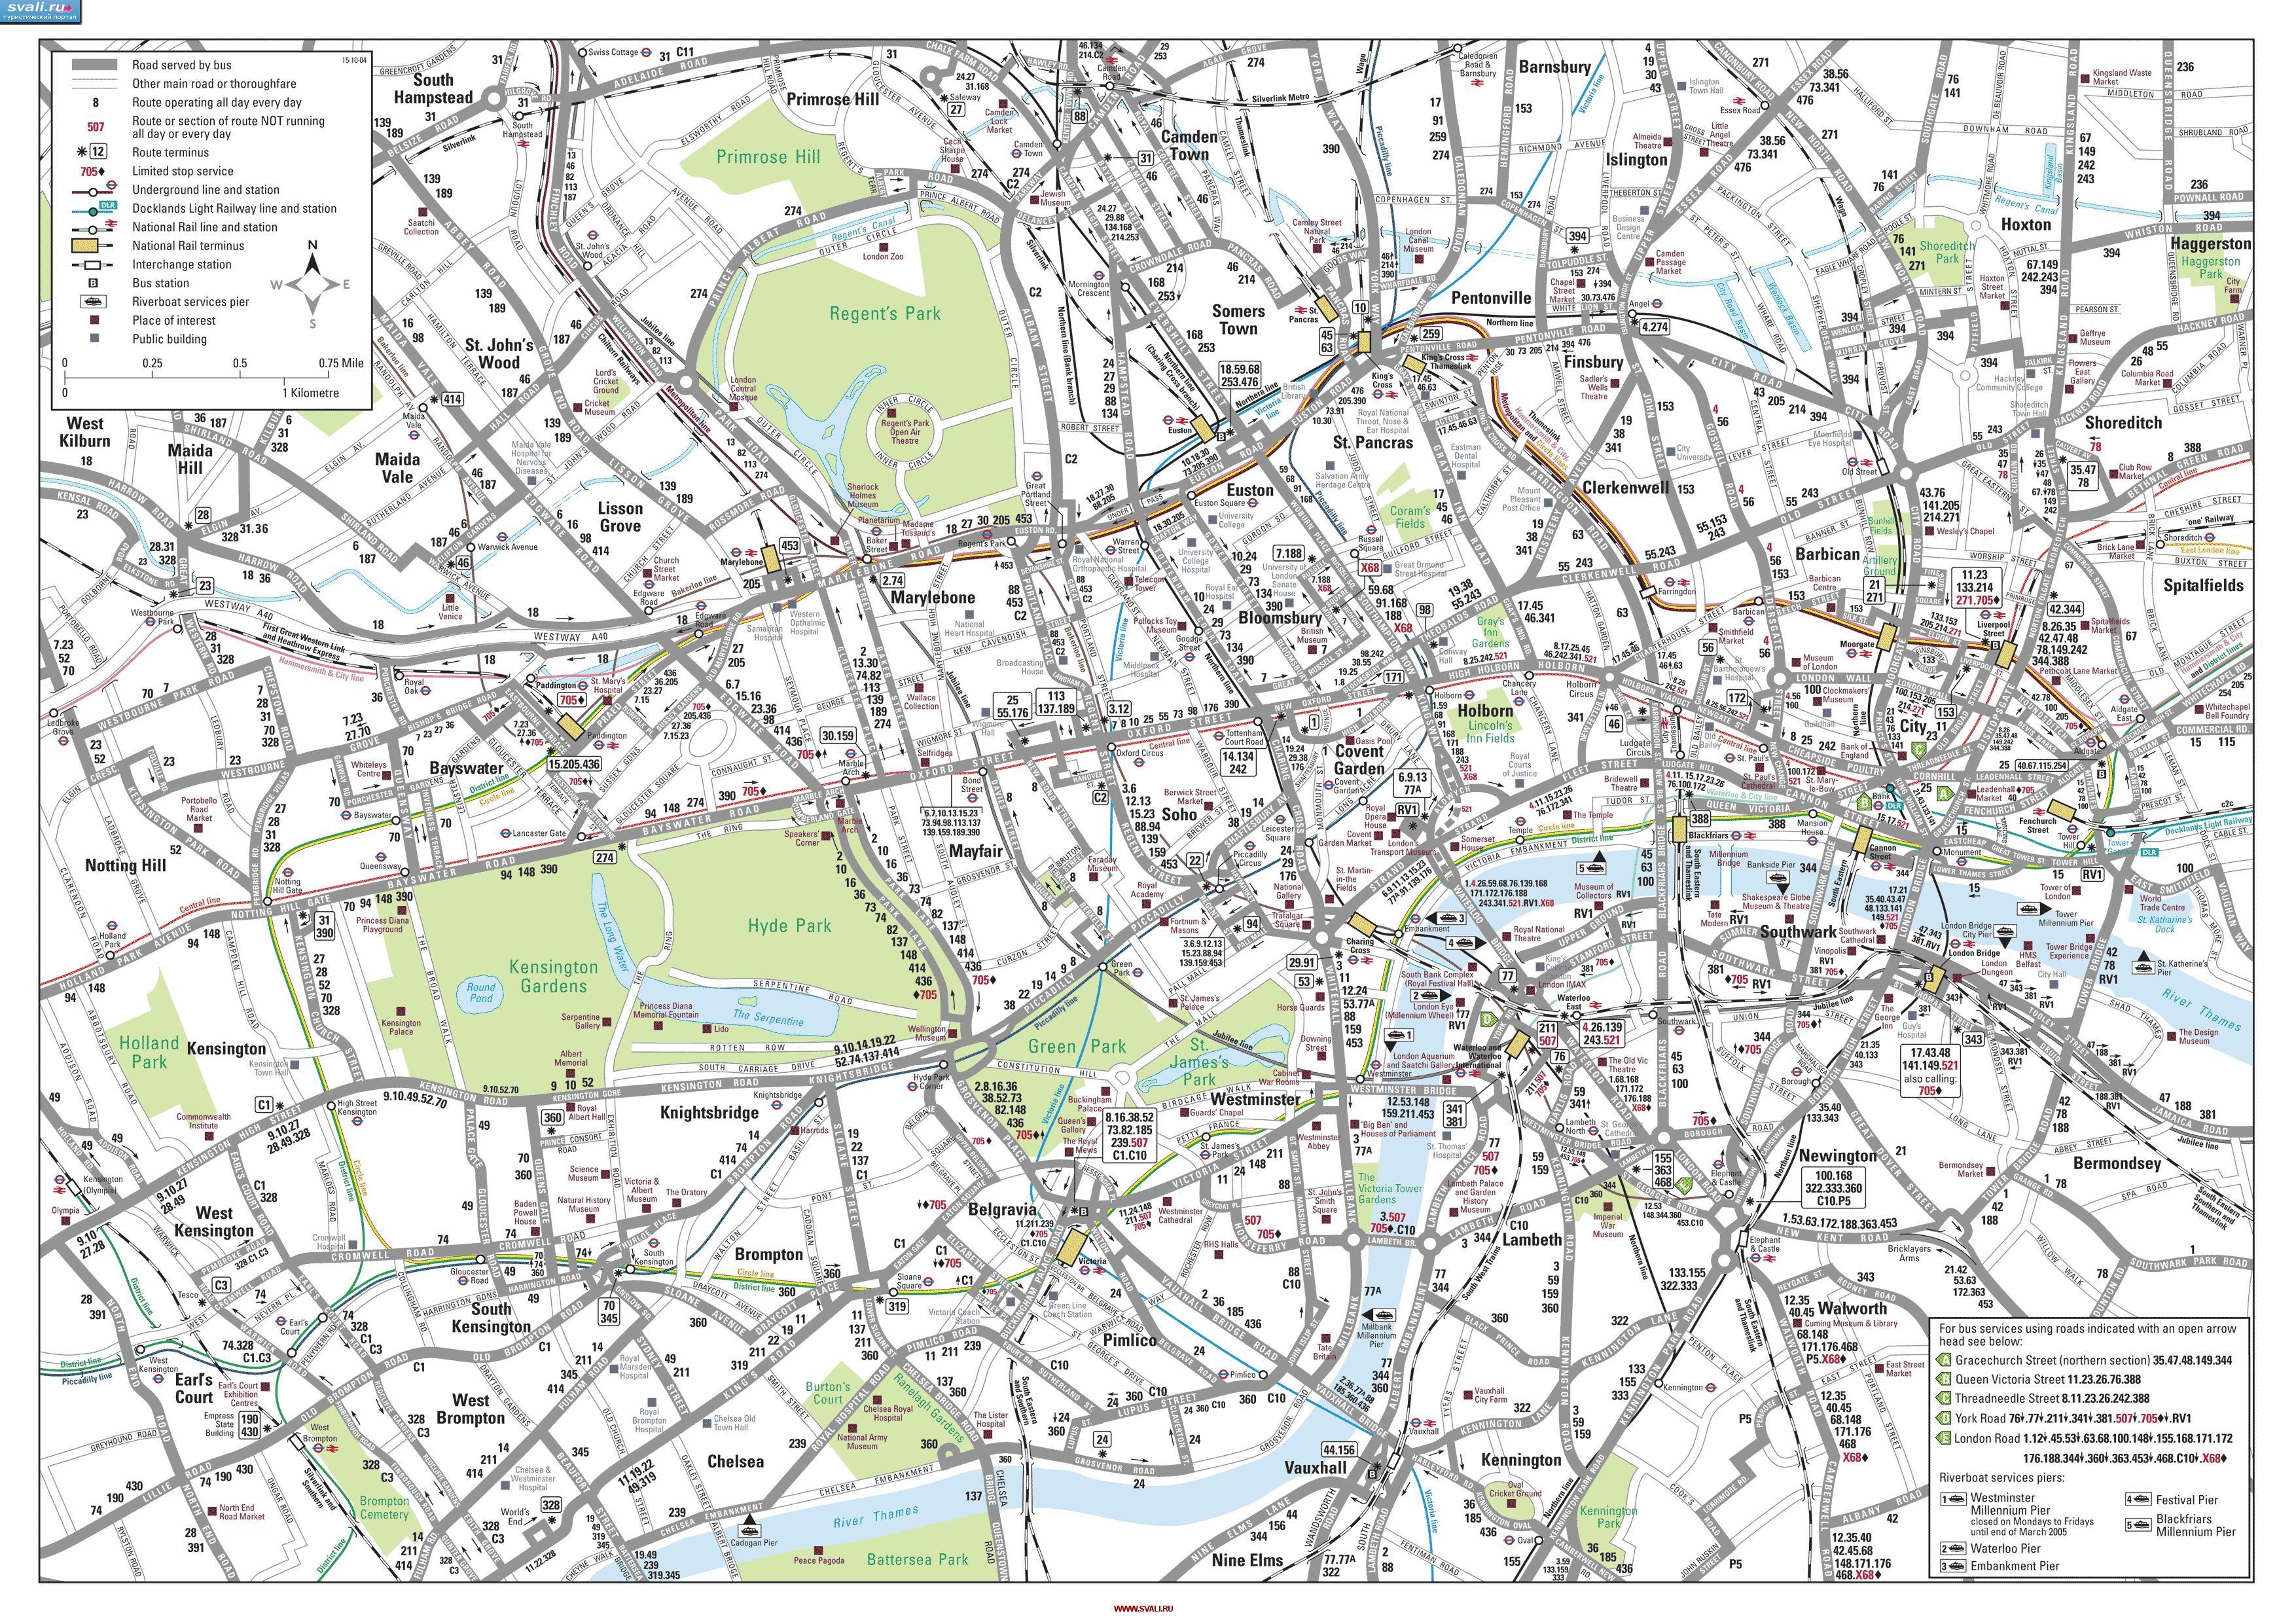 Великобритания. Карта центрального Лондона с маршрутами общественного транспорта (англ.)